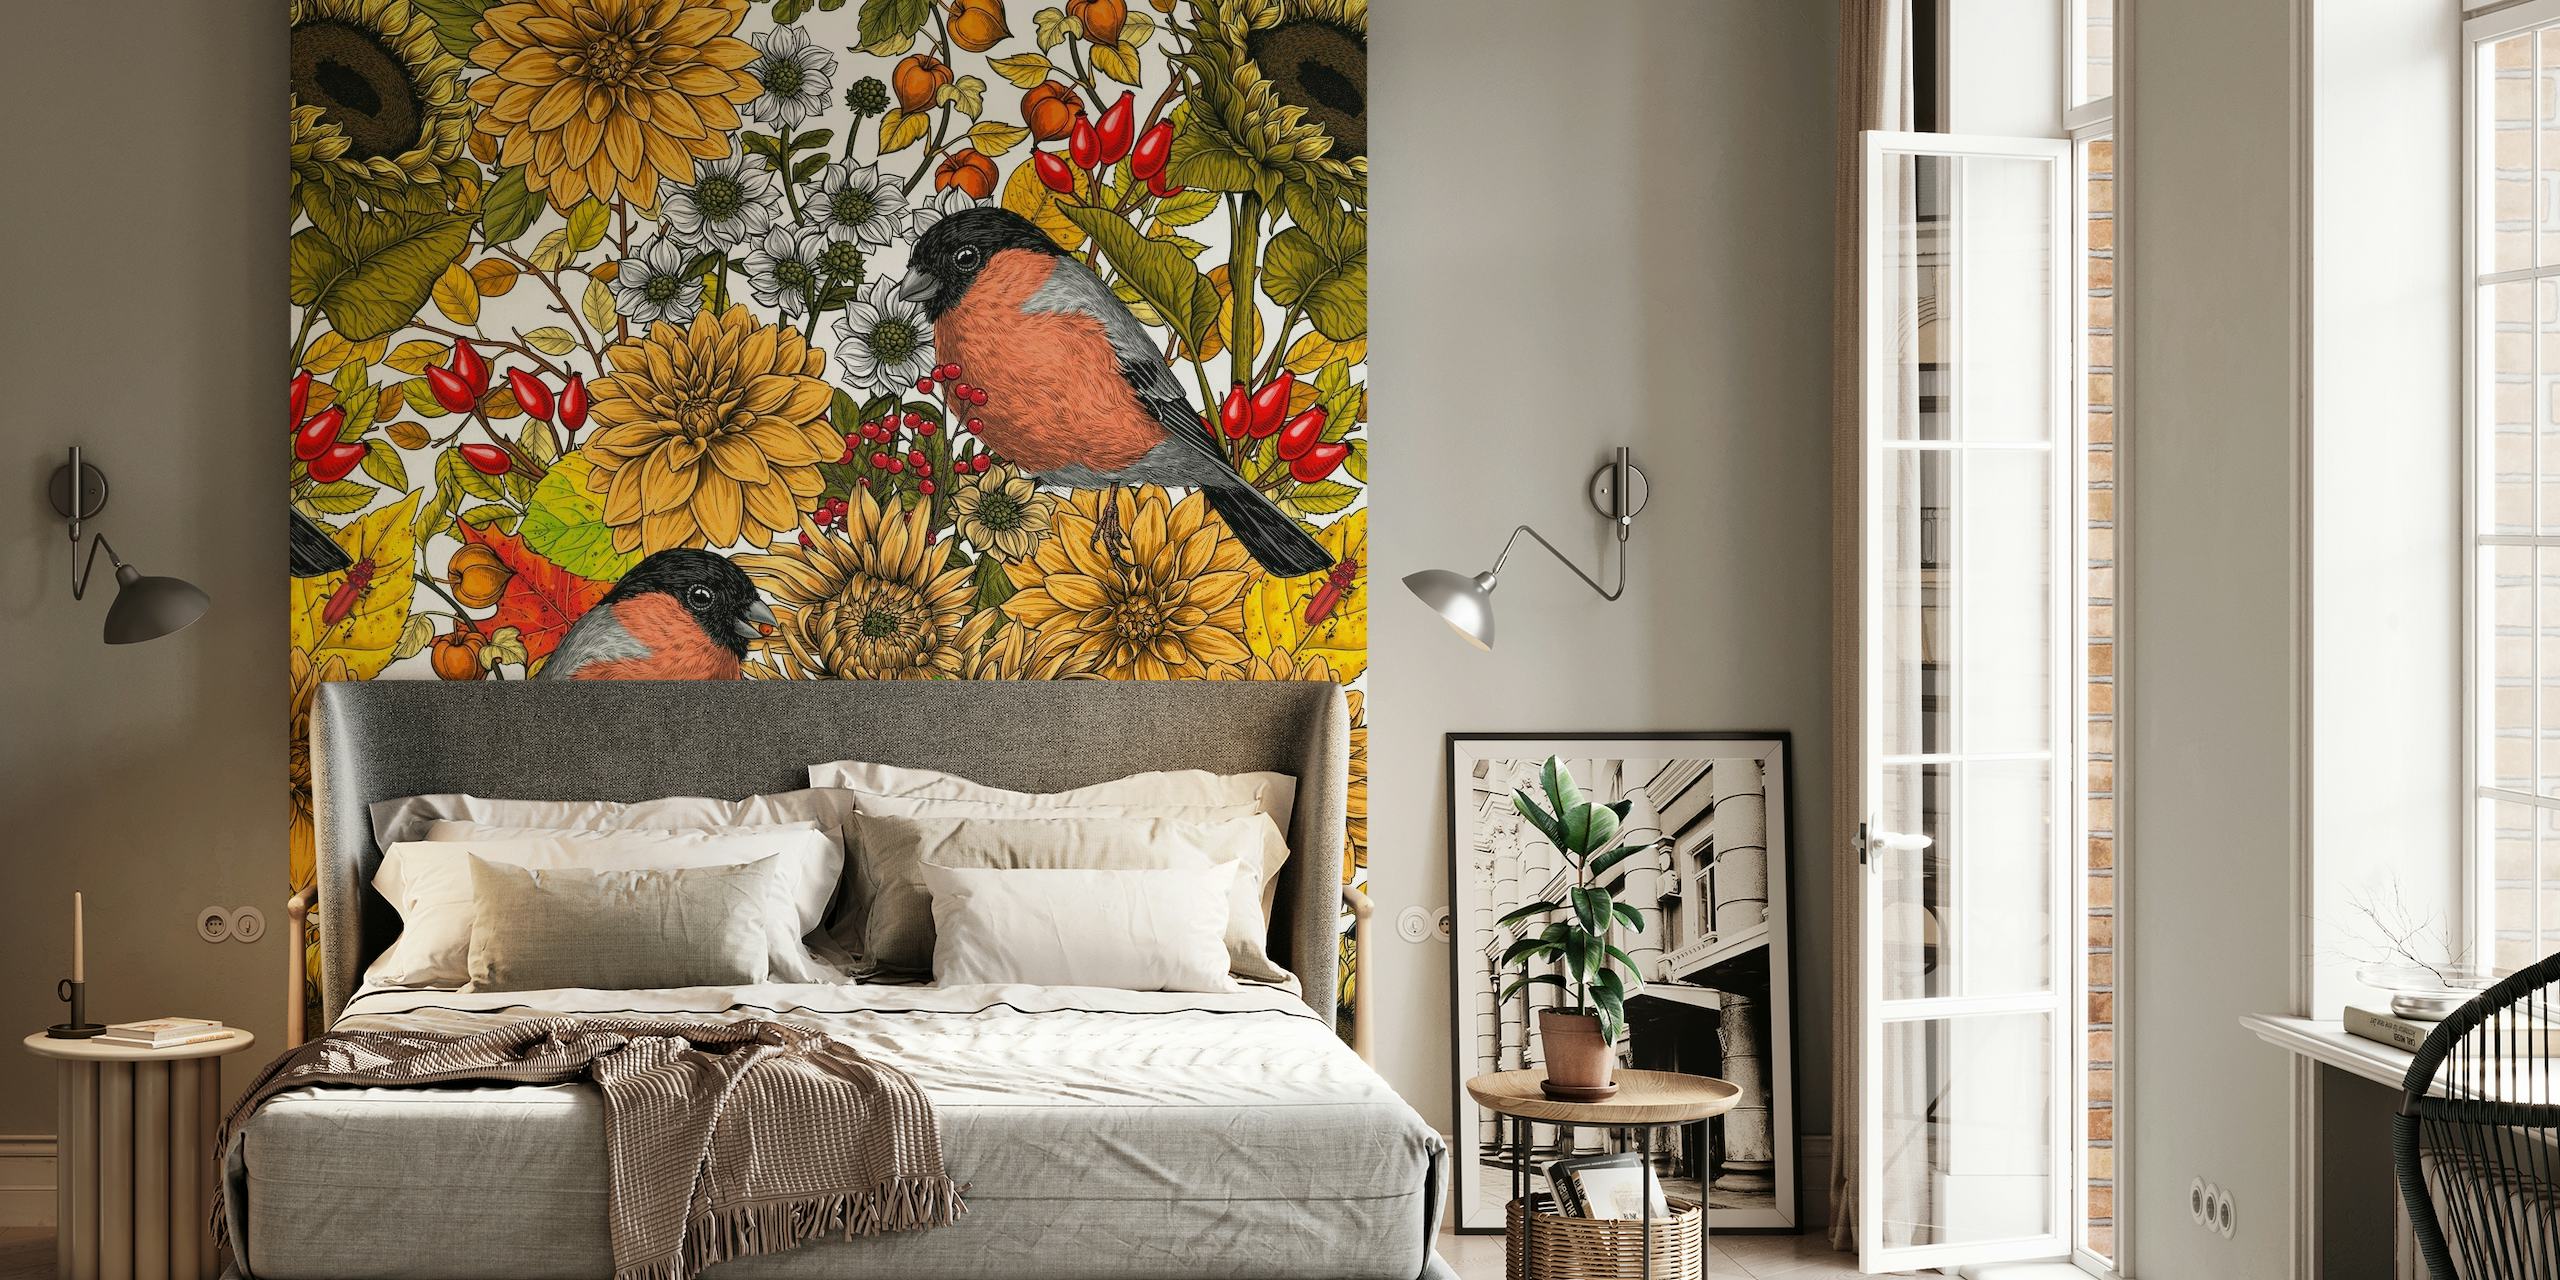 Väggdekor med solrosor, ringblommor och fåglar som representerar höstens trädgårdslandskap